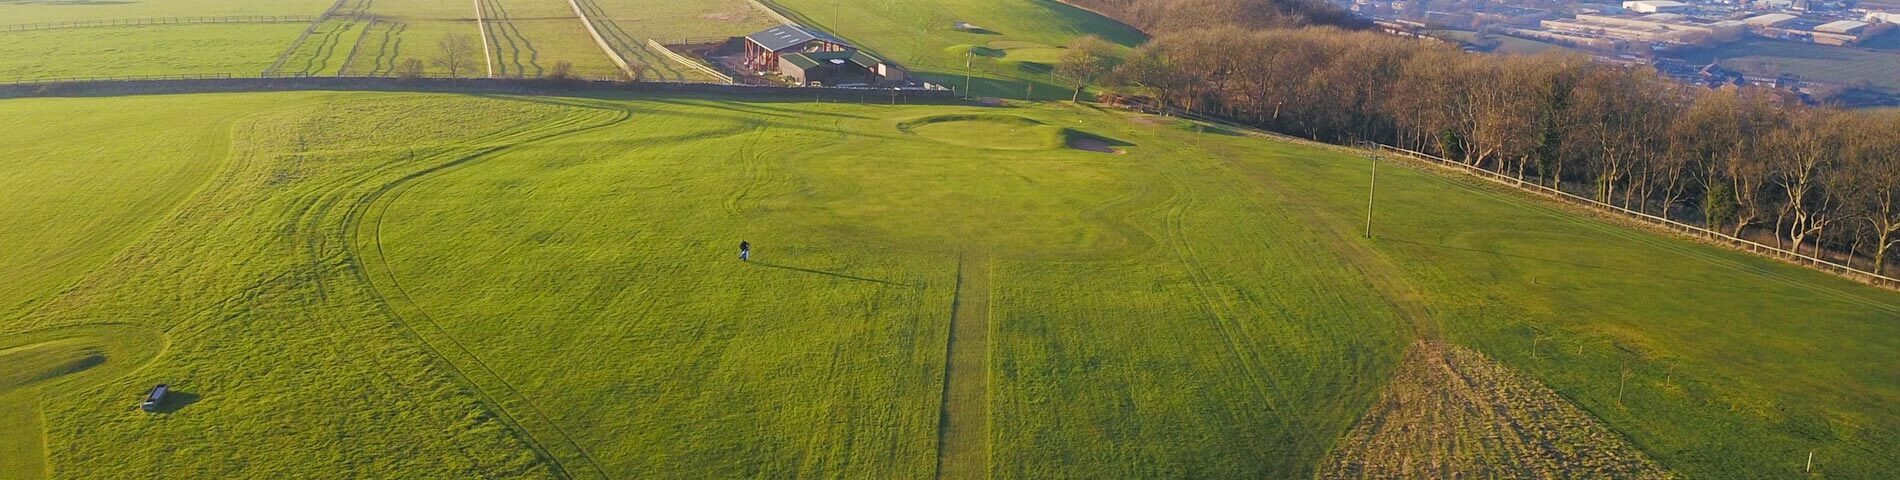 Bleadon Hill Golf Course